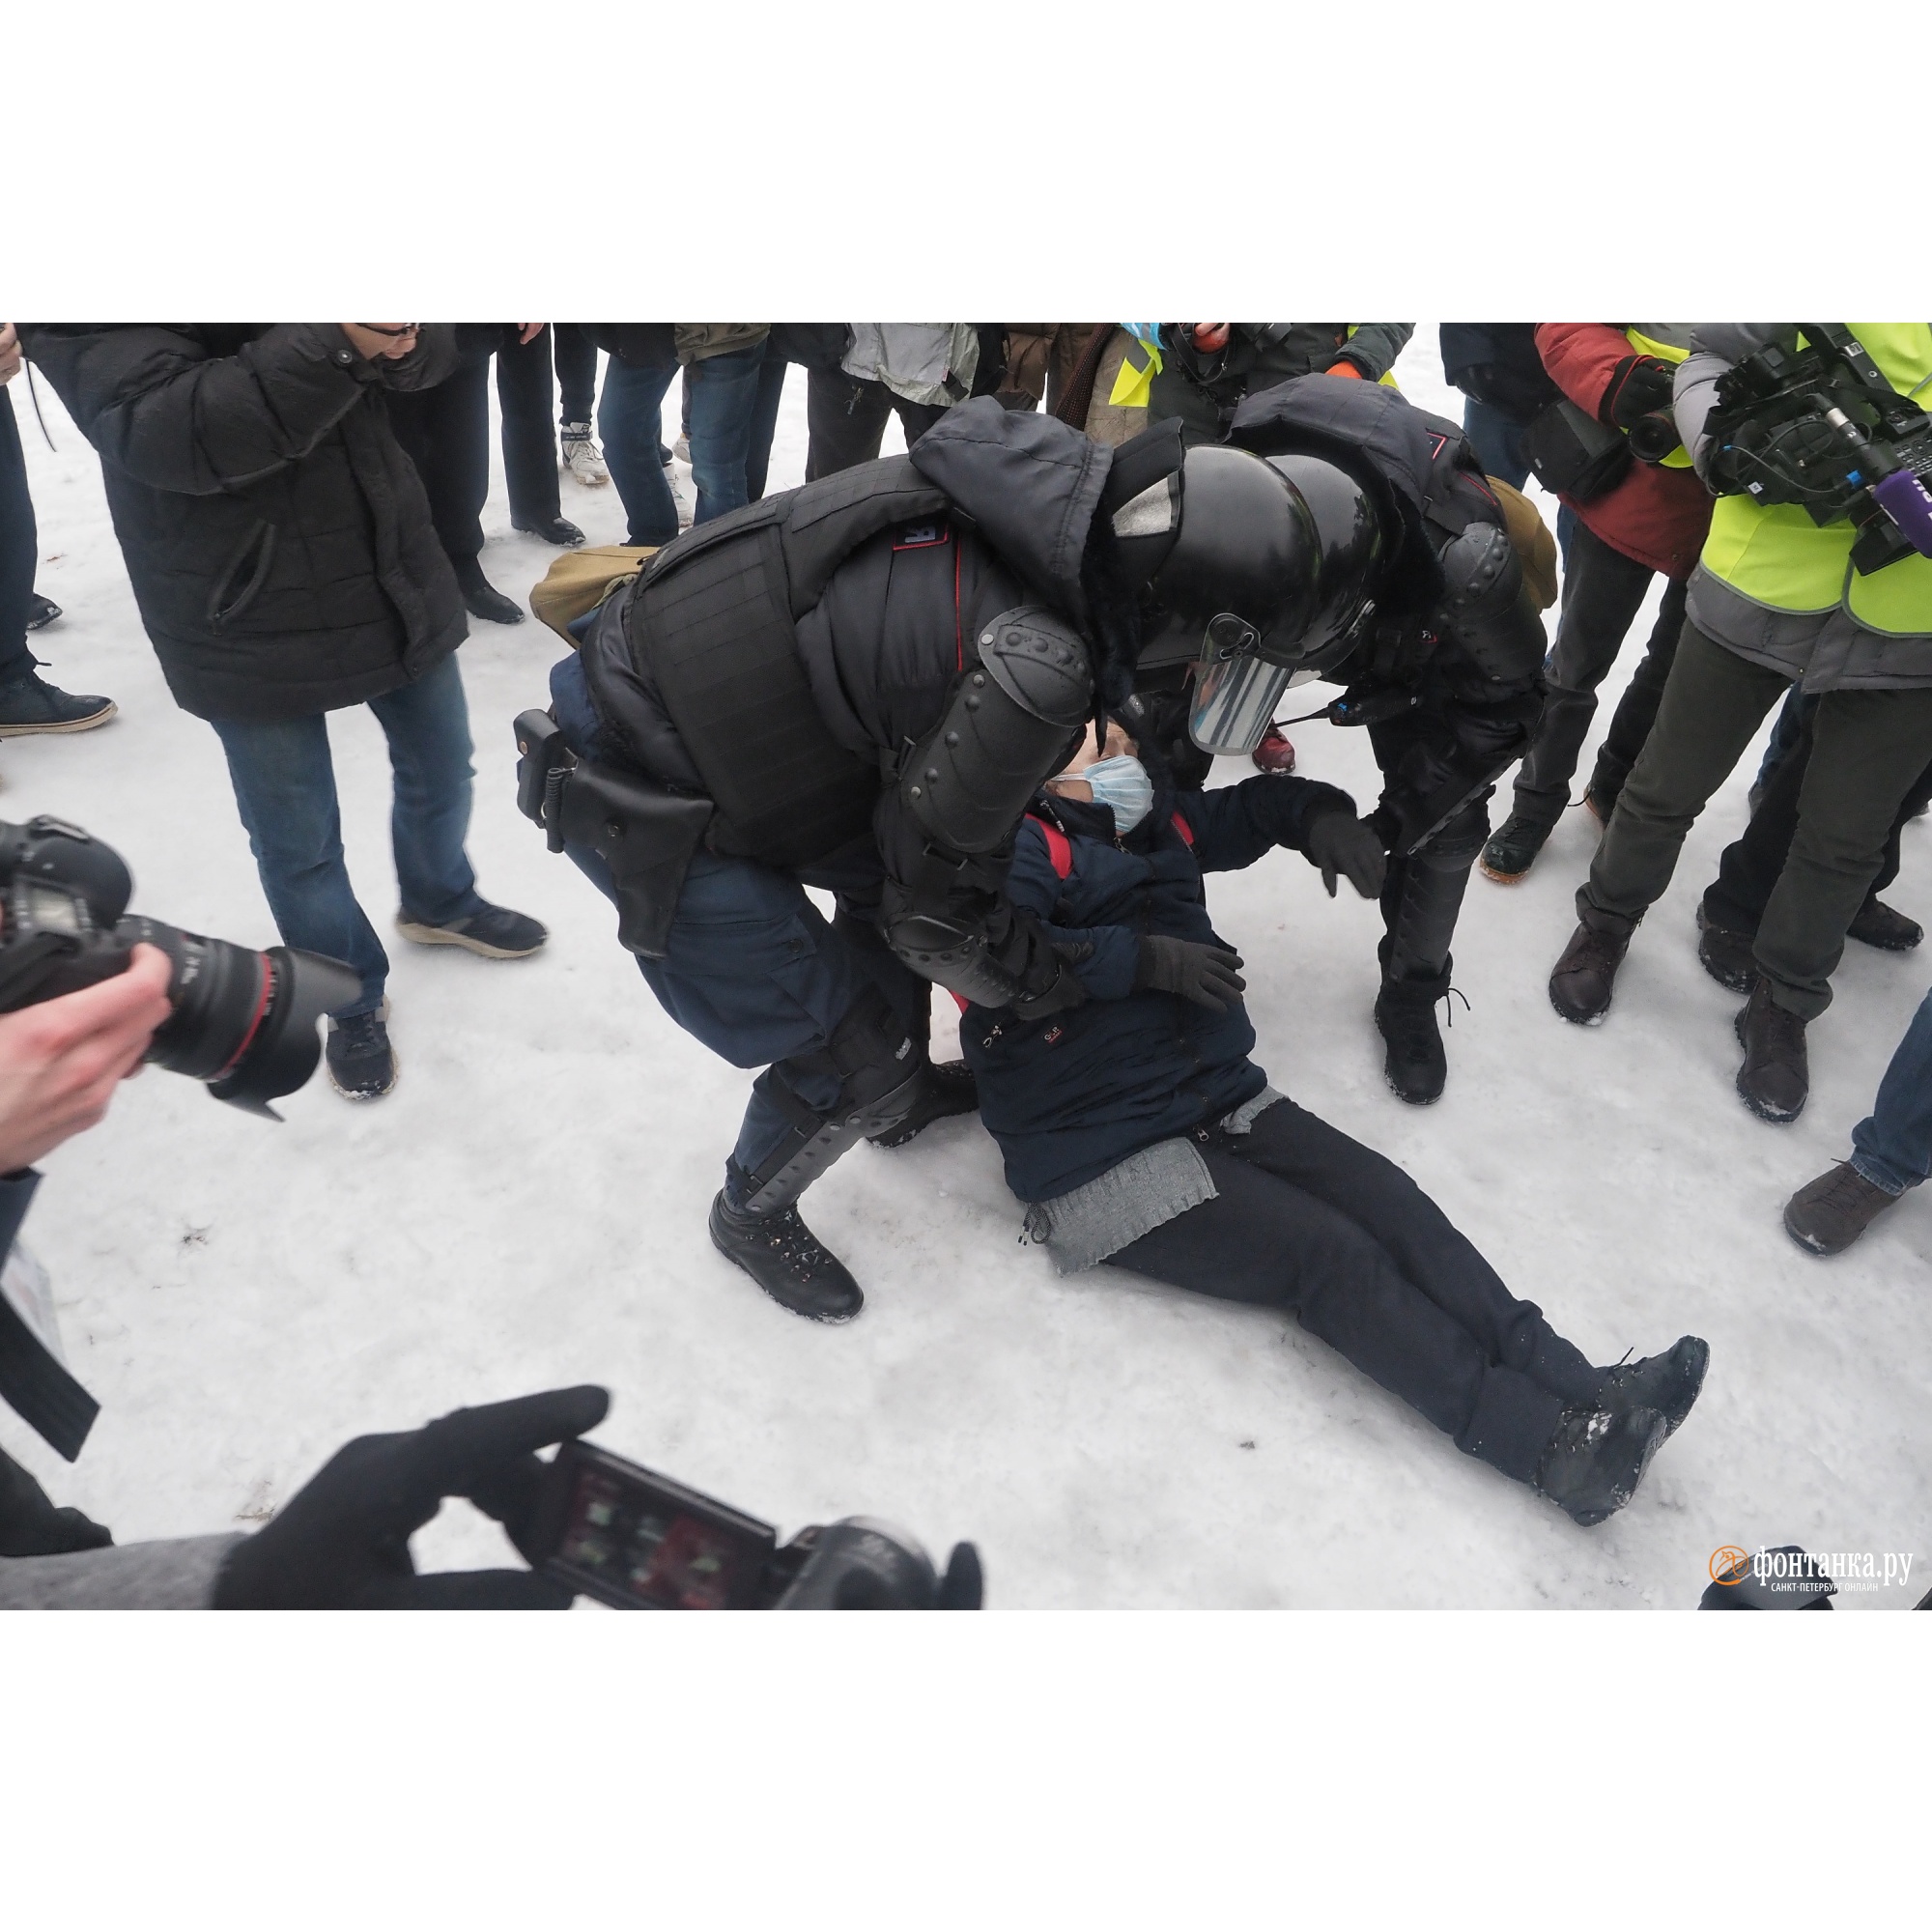 Сегодня свежие новости события что происходит. Задержания протесты 23 января 2021. Последние новости Петербурга. Жесткие кадры с протестов.